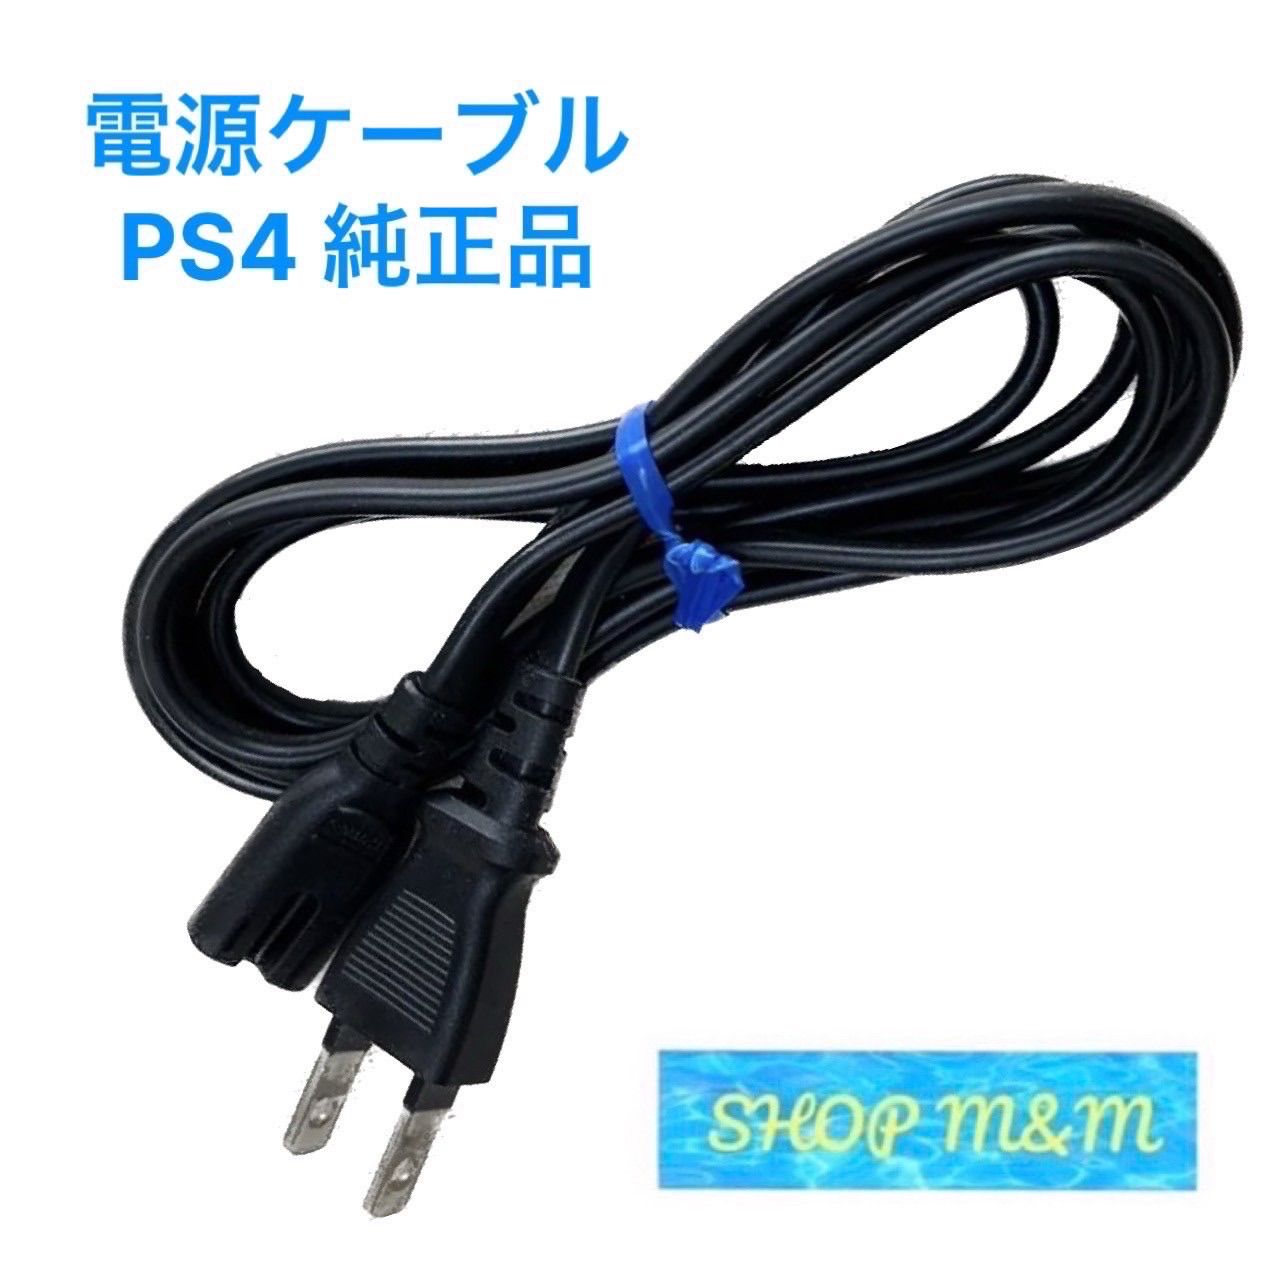 PS4 純正 電源ケーブル 付属品 ACアダプター ケーブル